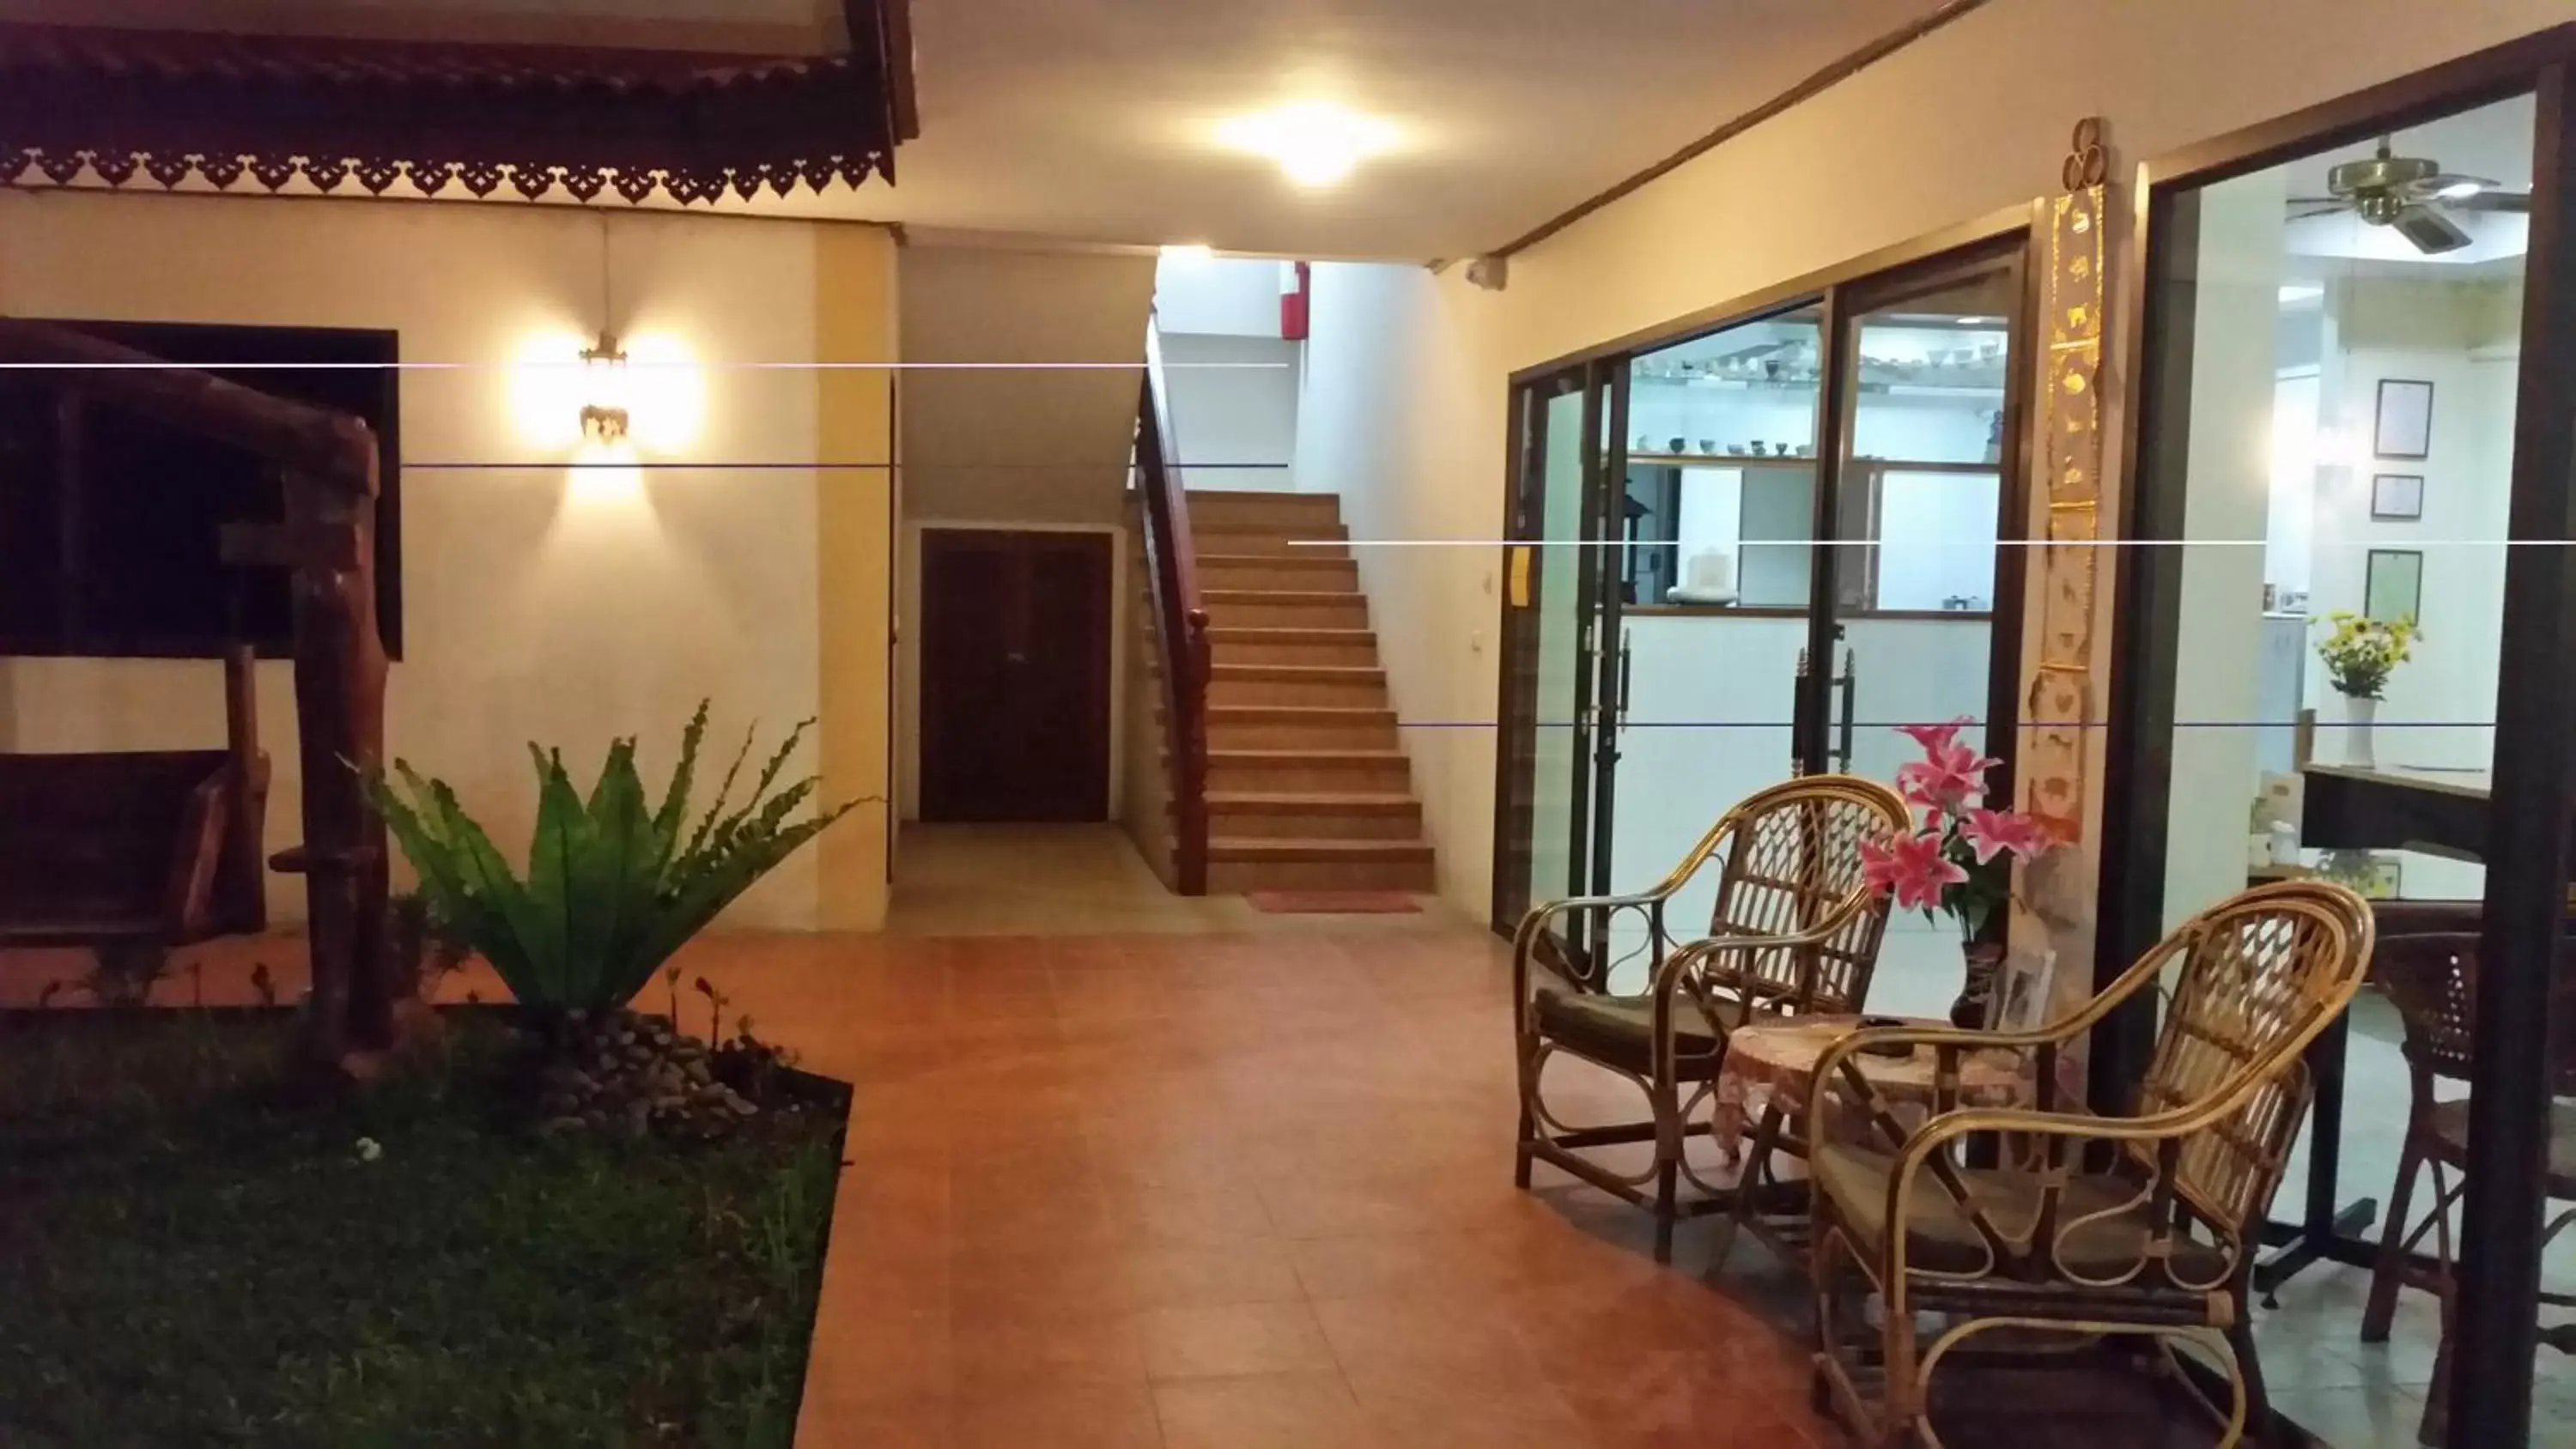 Area and facilities in Villa Oranje Chiang Mai